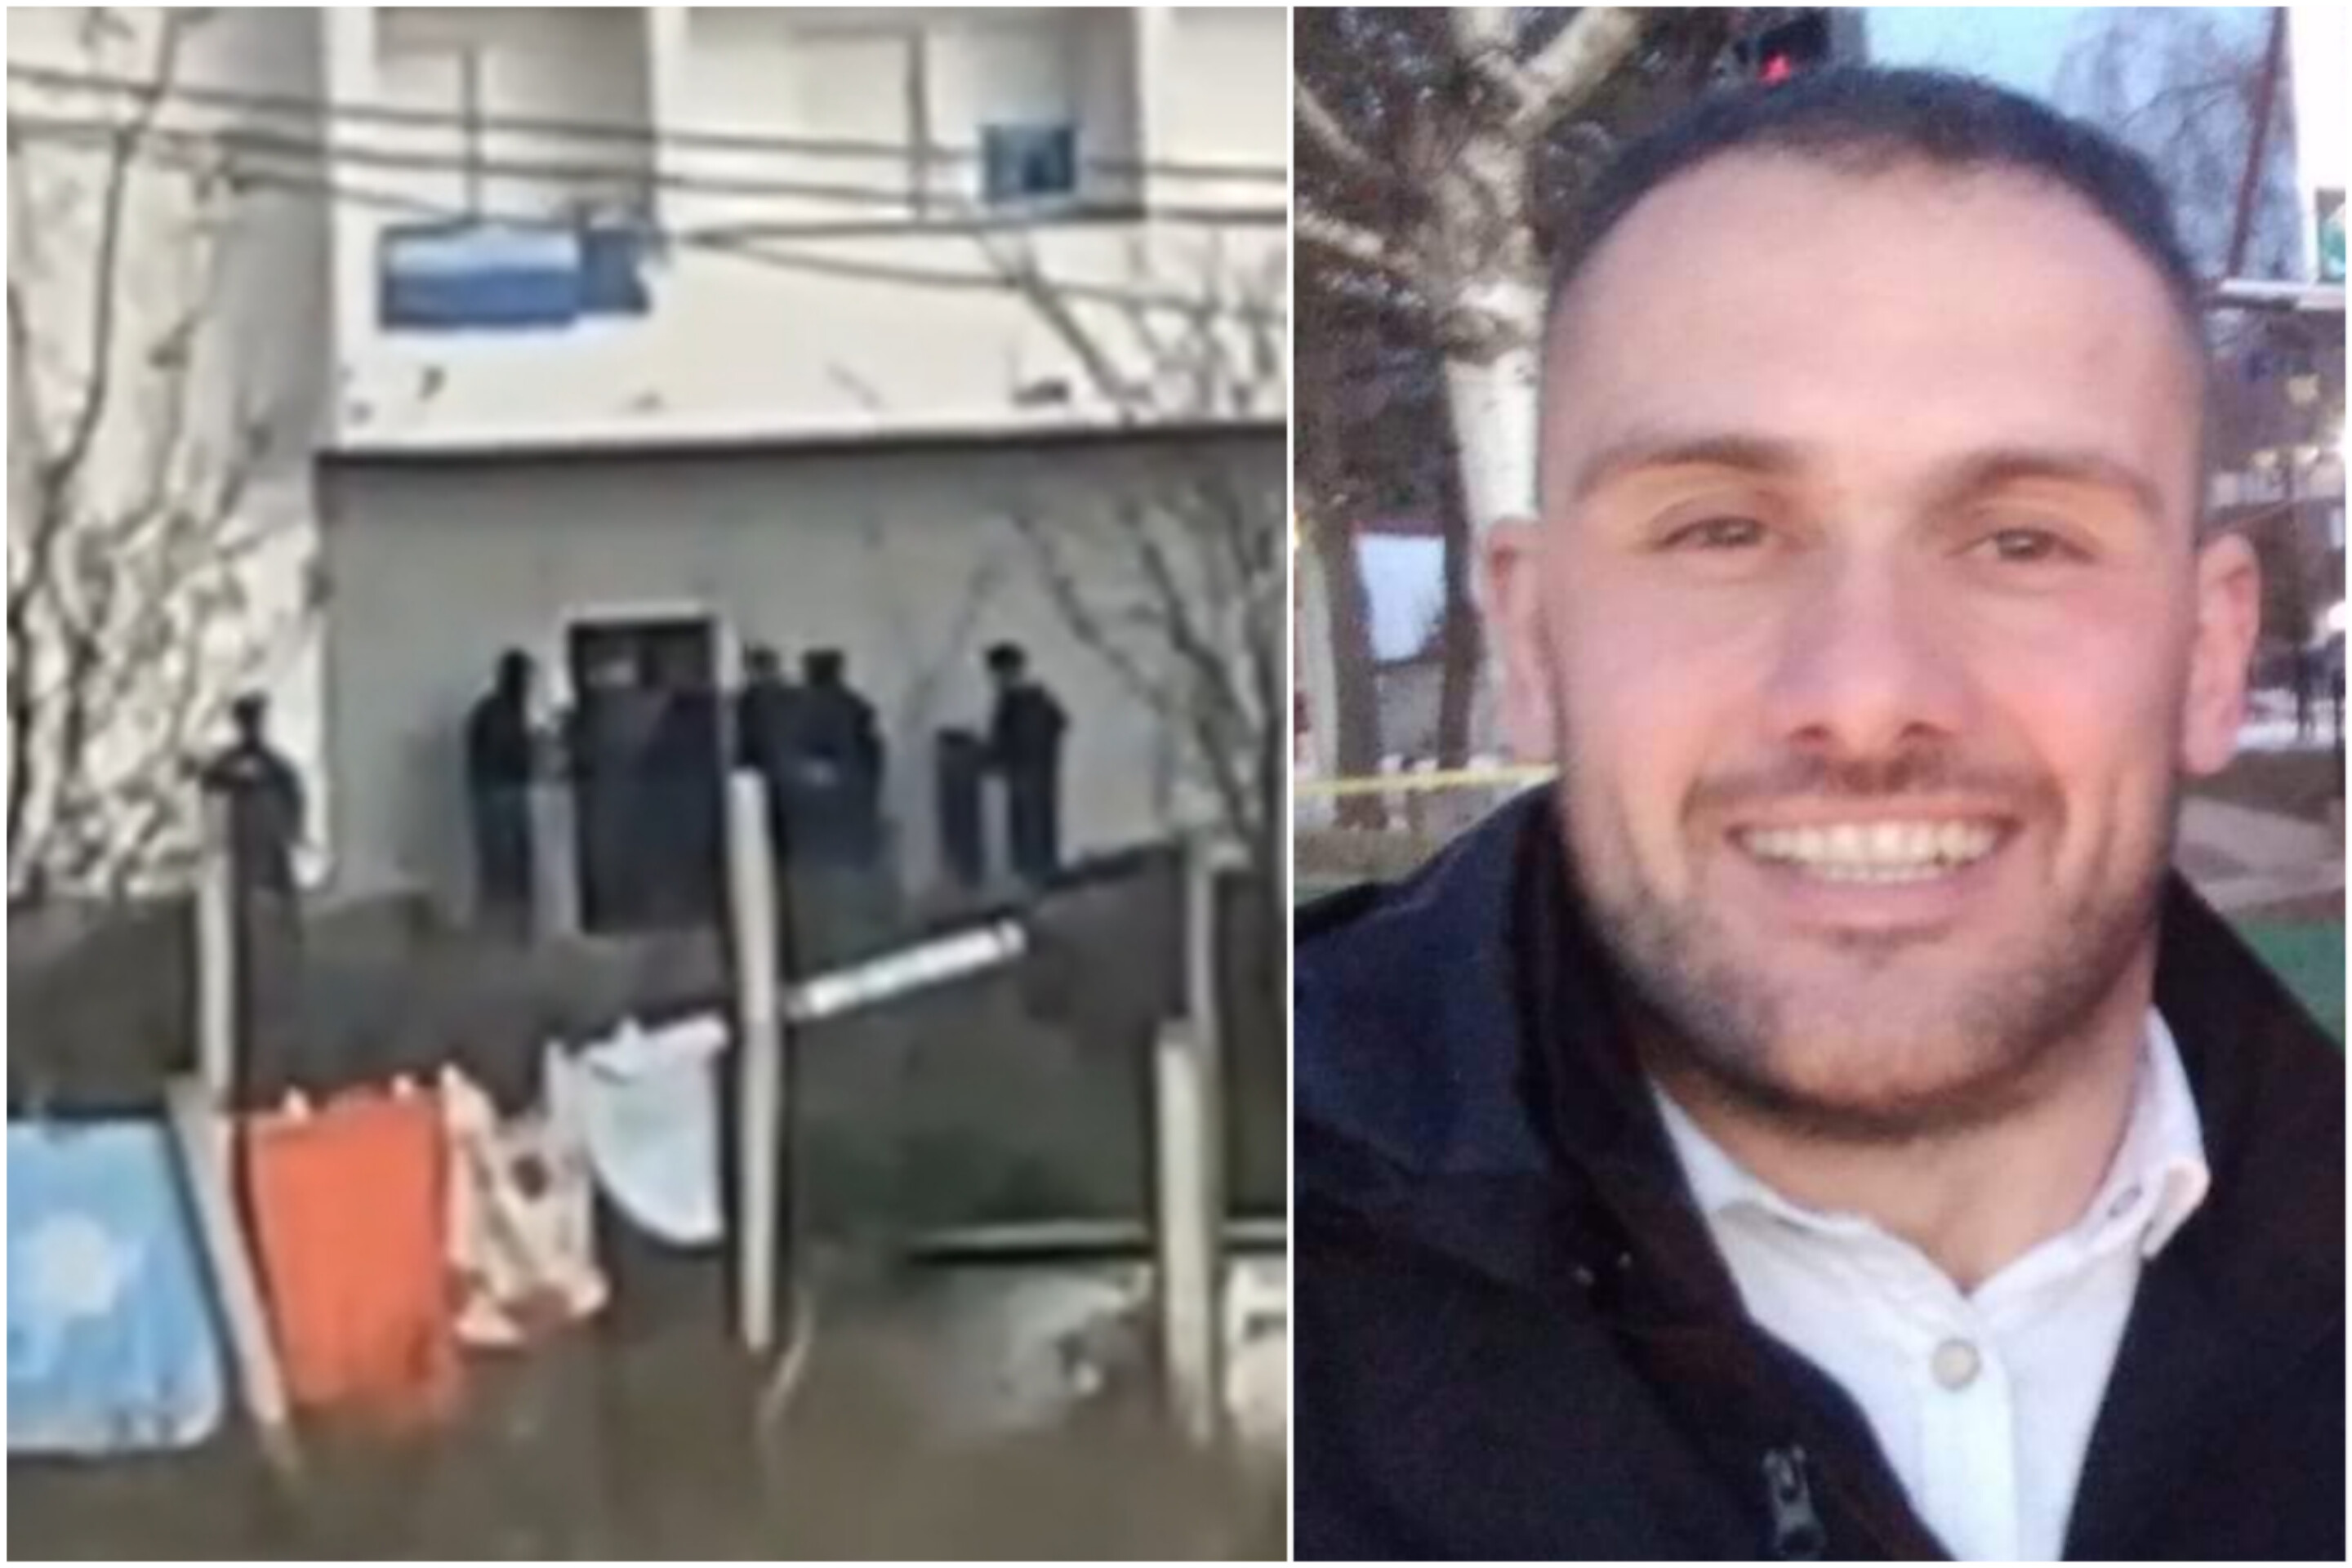 Momenti kur policia i bën thirrje për dorëzim Sokol Halilit, para se të vriste vetën